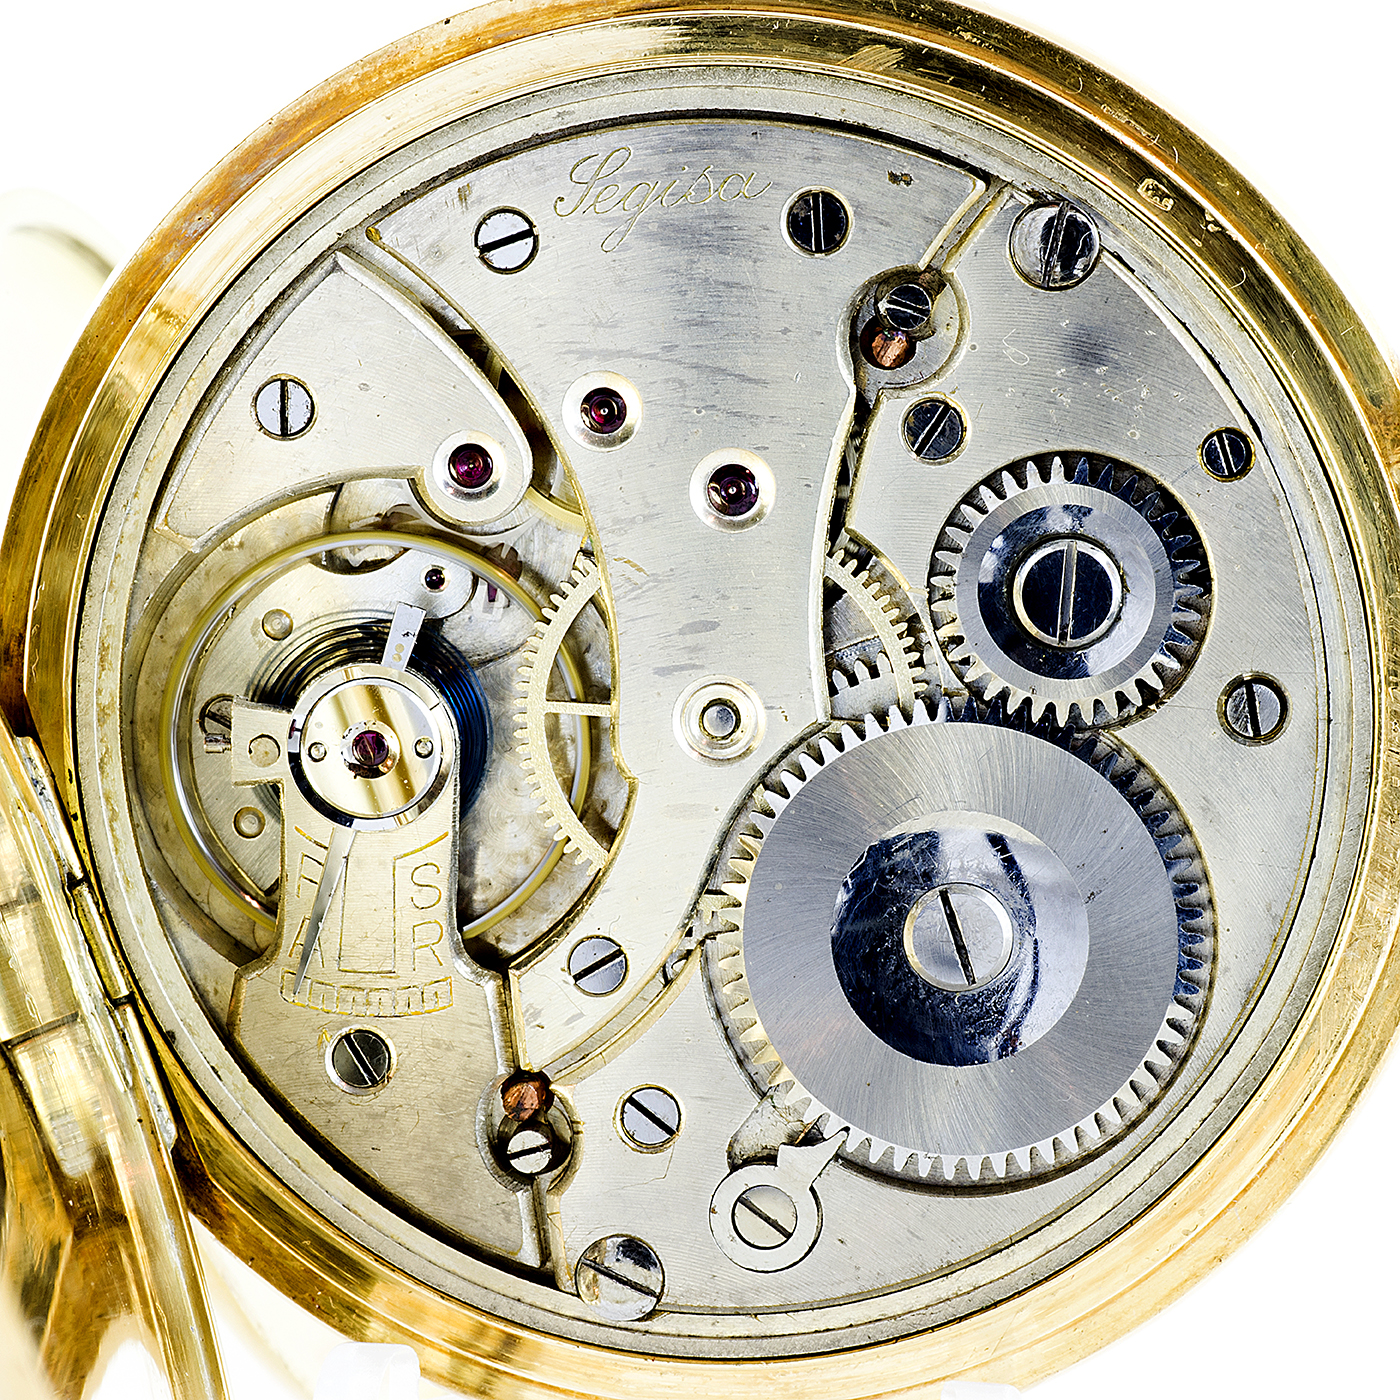 Segisa (Sevilla) - reloj de bolsillo - saboneta y remontoir.Oro 18k. ca. 1900